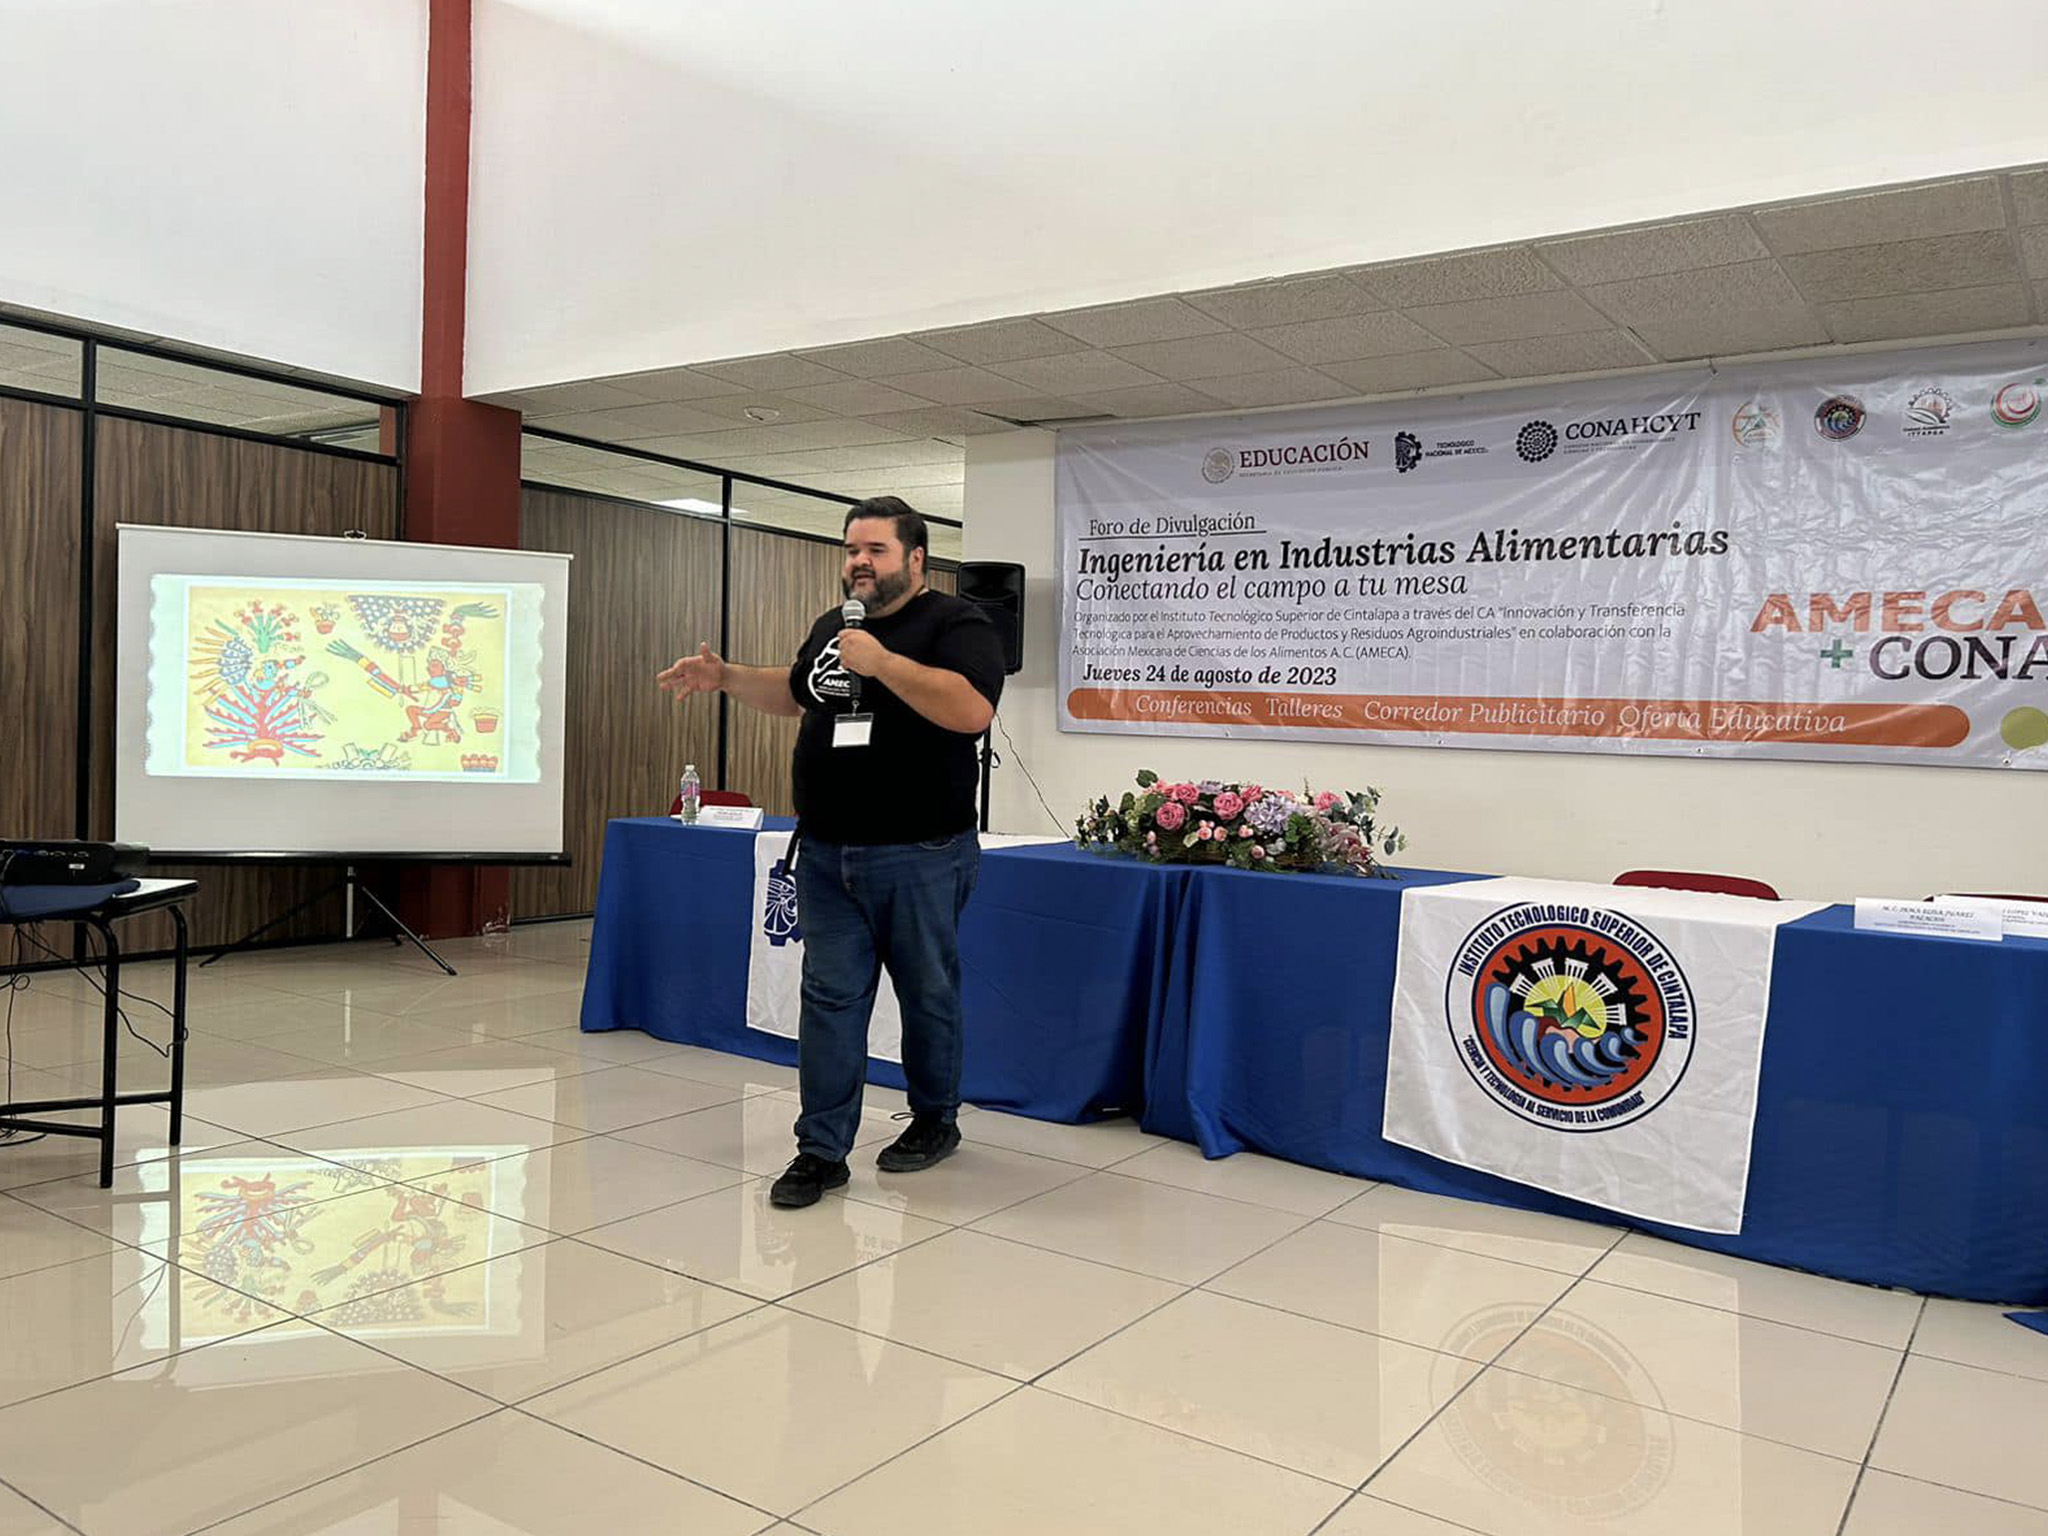 Proyecto AMECA+CONAHCYT. Procesamiento de Alimentos y Nutrición. Tuxtla Gutiérrz, Chiapas - AMECA, AC